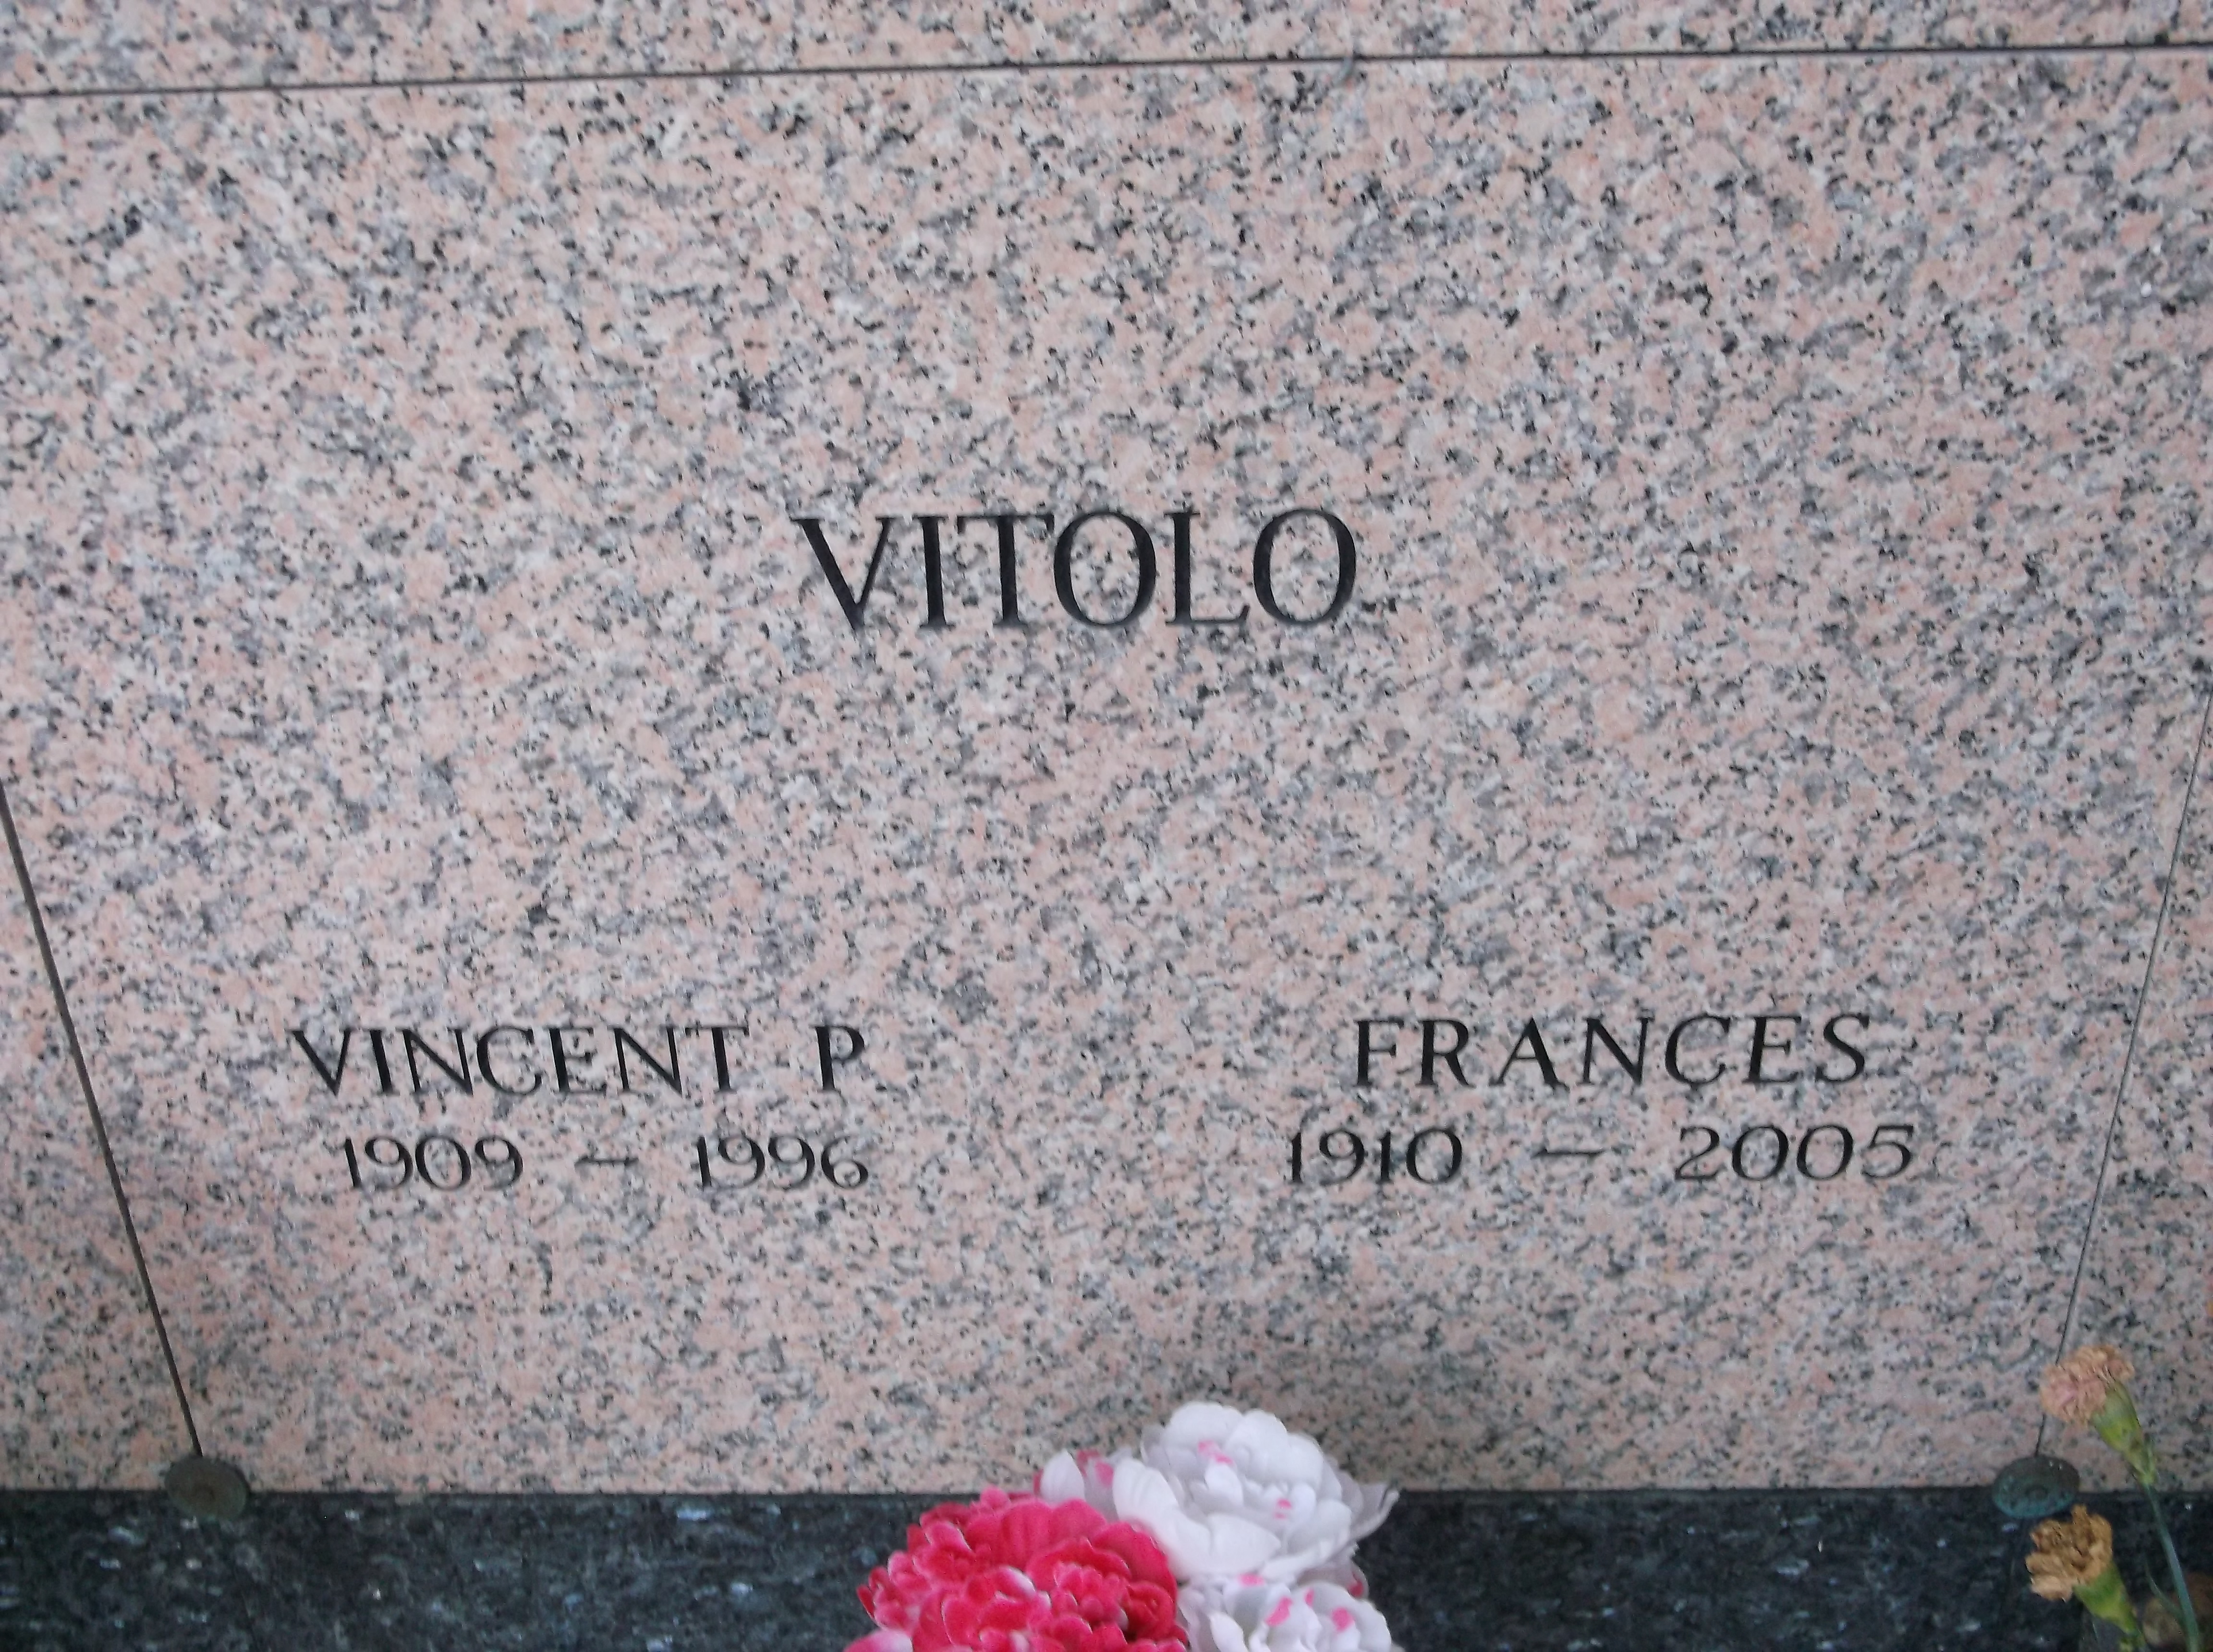 Vincent P Vitolo